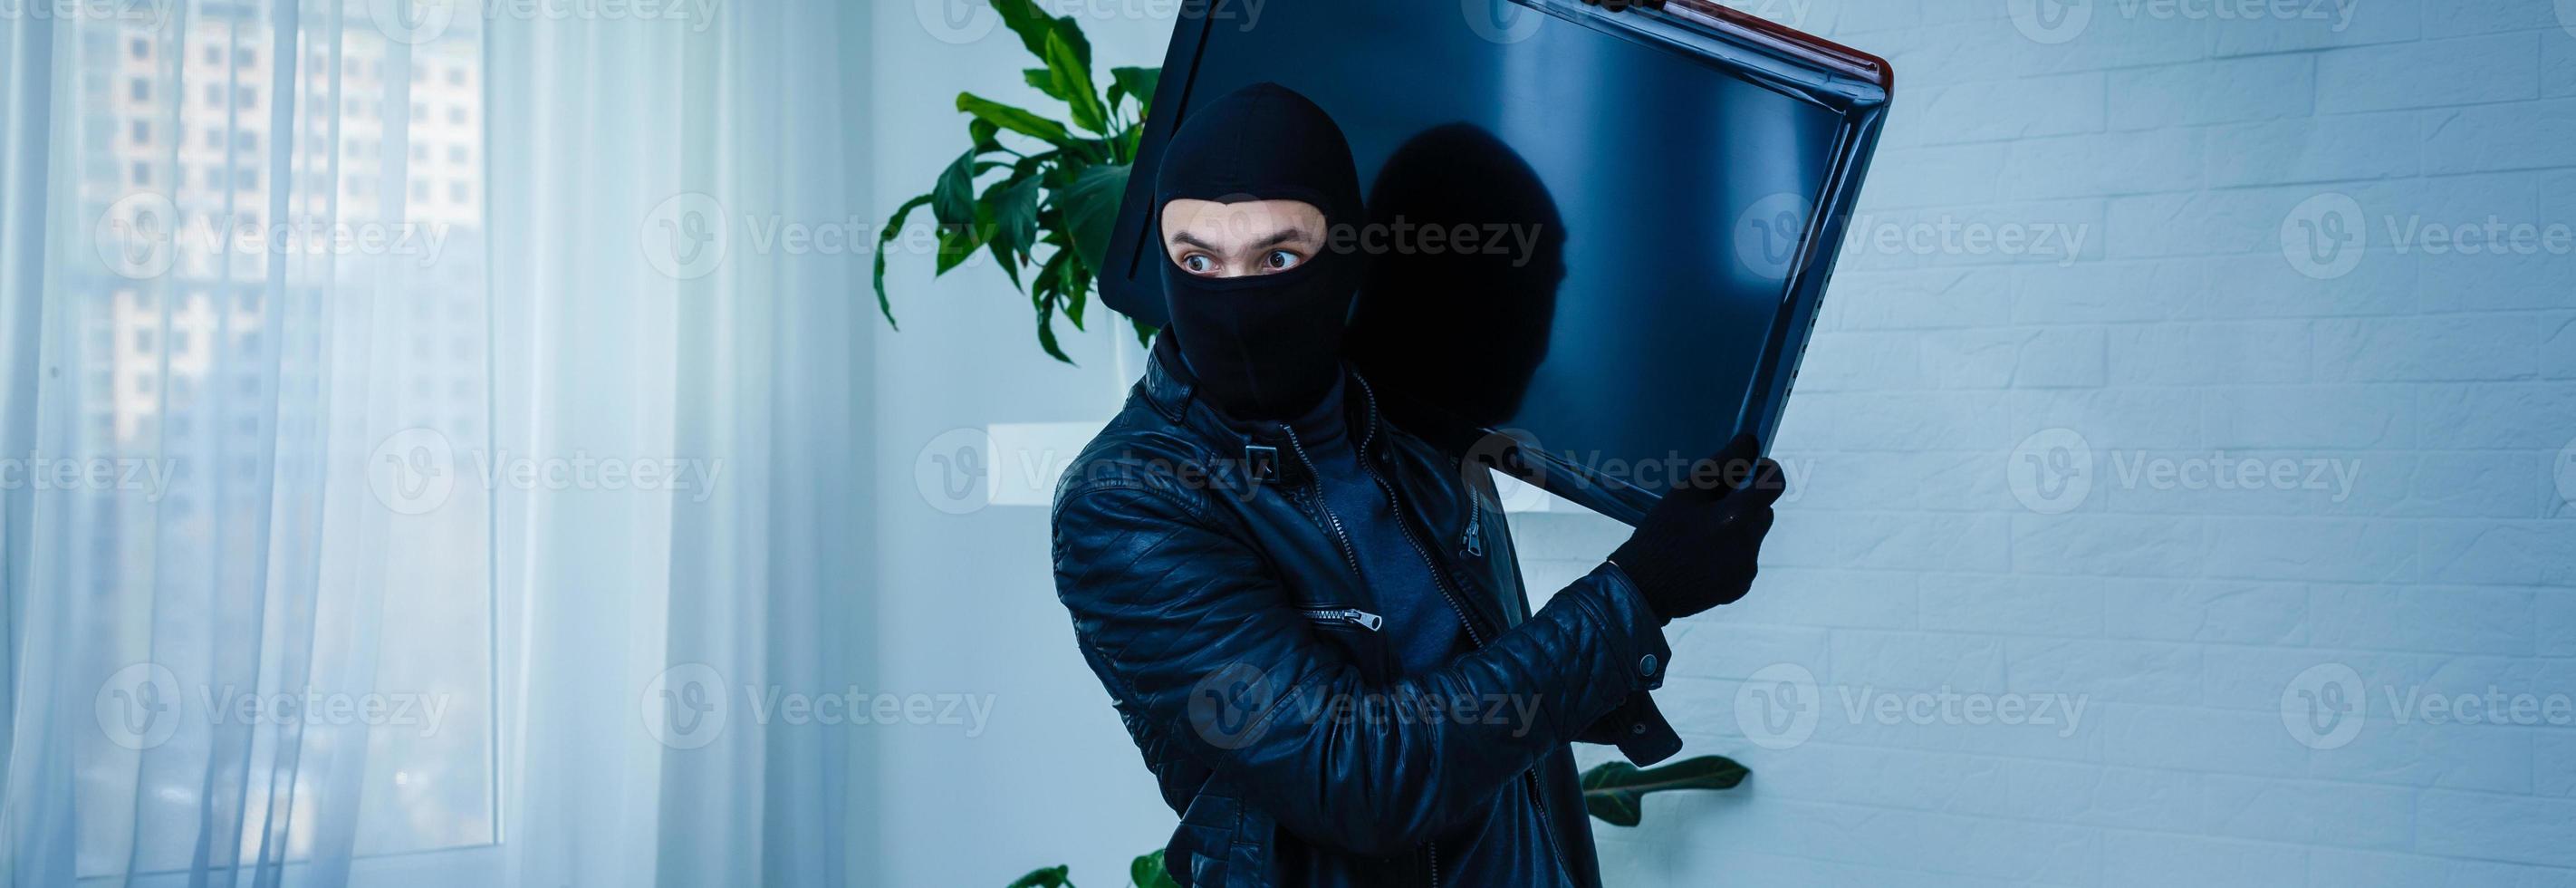 hombre ladrón robando televisor de casa foto